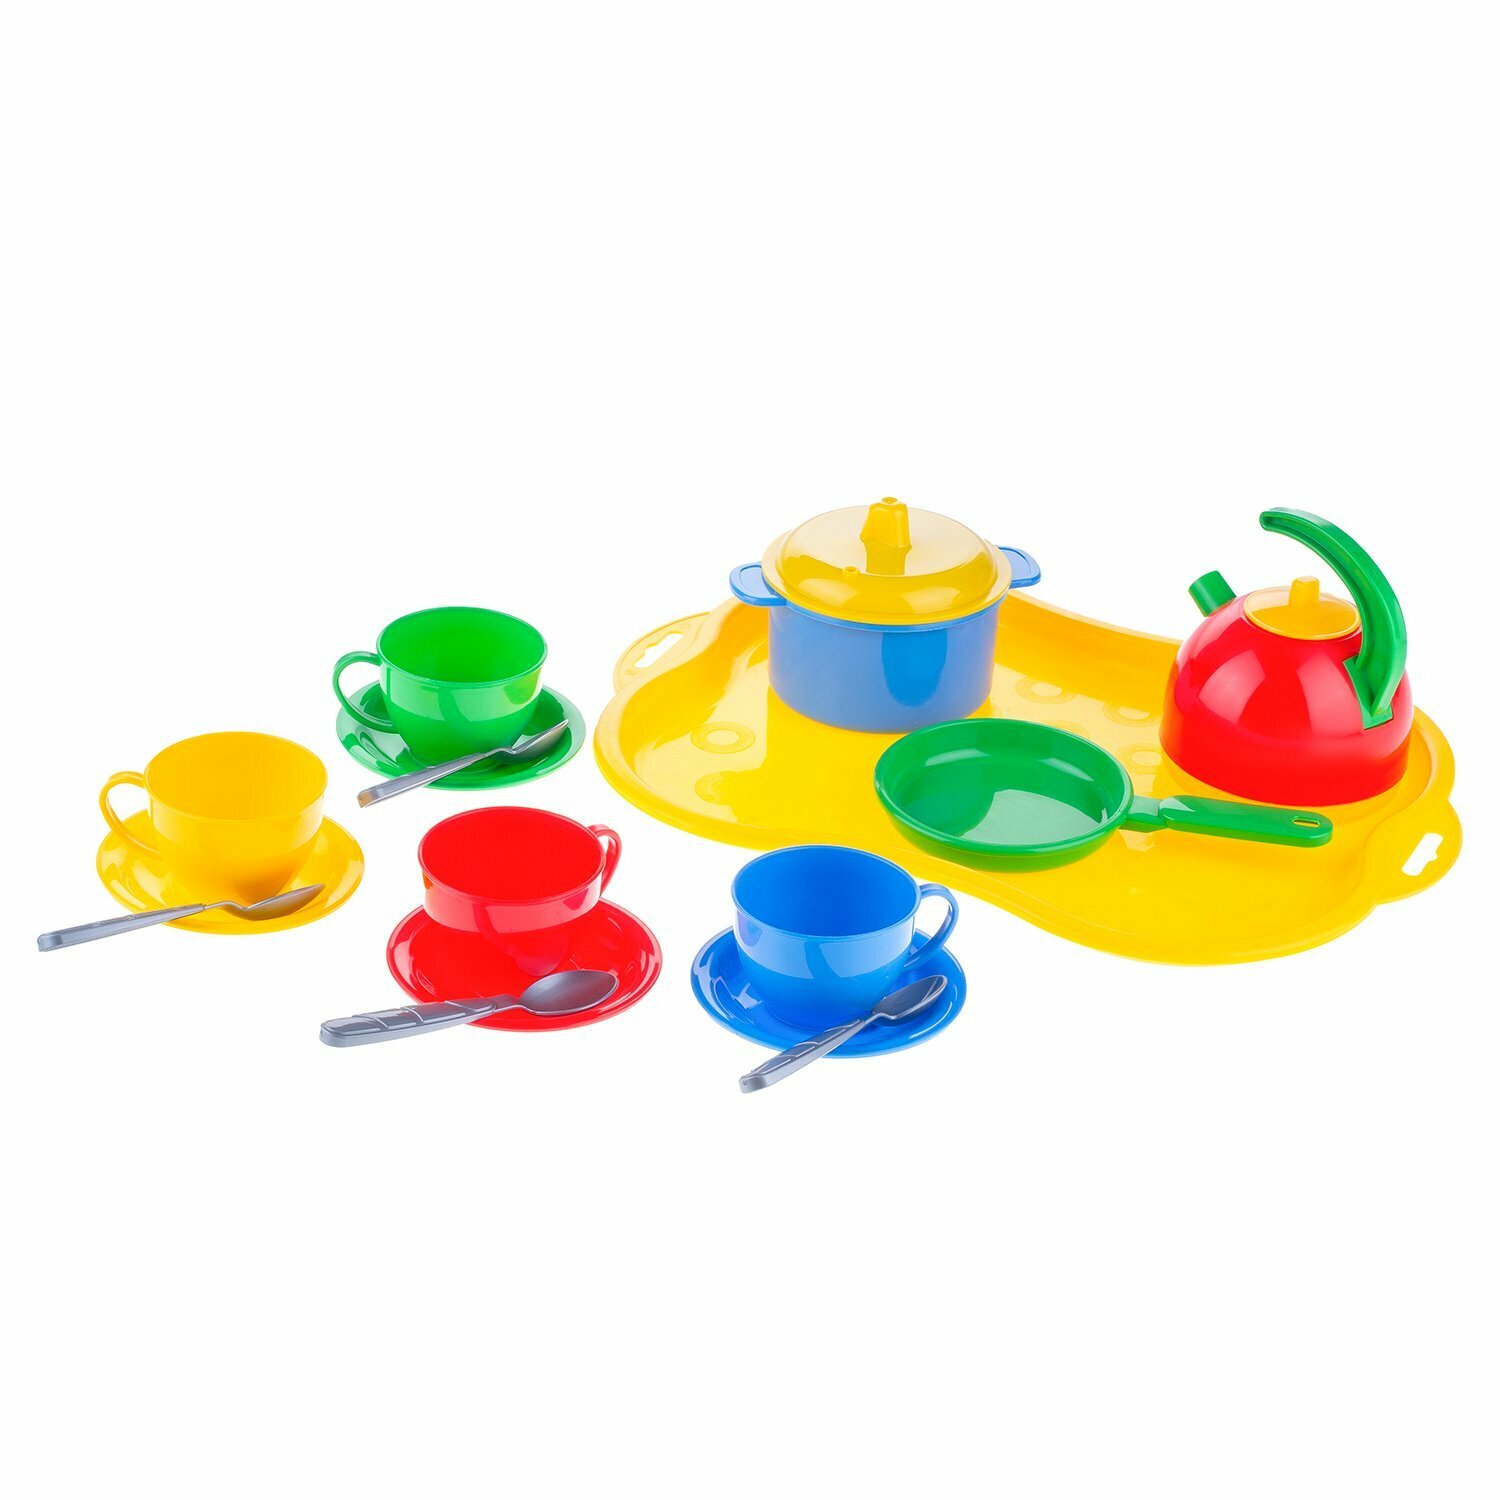 Кухня детская игровая набор Маринка №7 технок / пластиковая посуда игрушечная набор